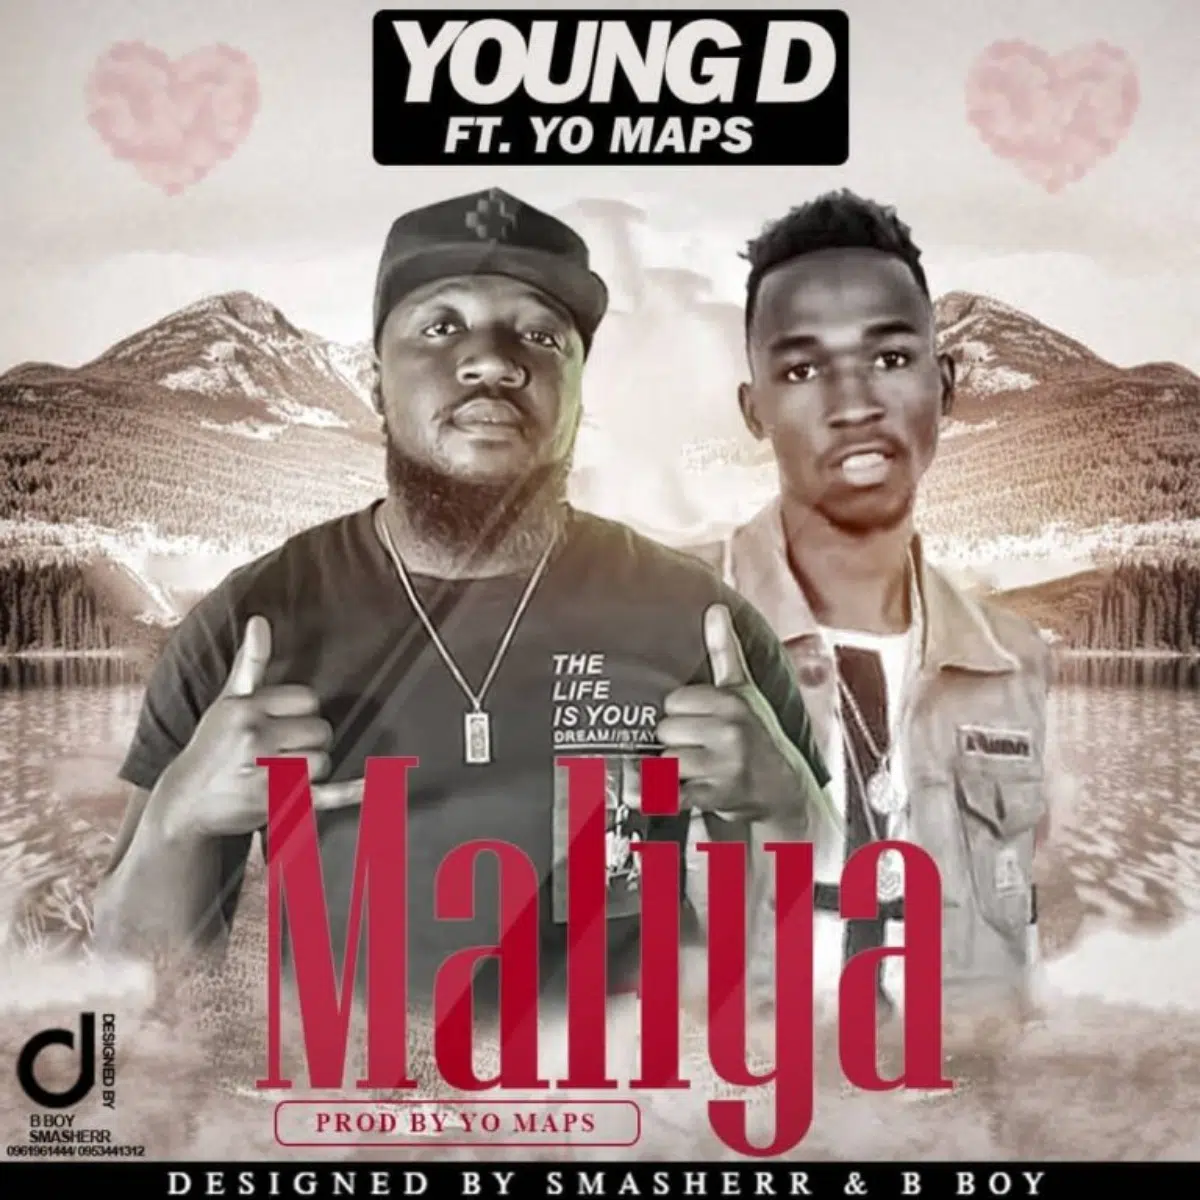 DOWNLOAD: Young D Ft Yo Maps – “Maliya” Mp3